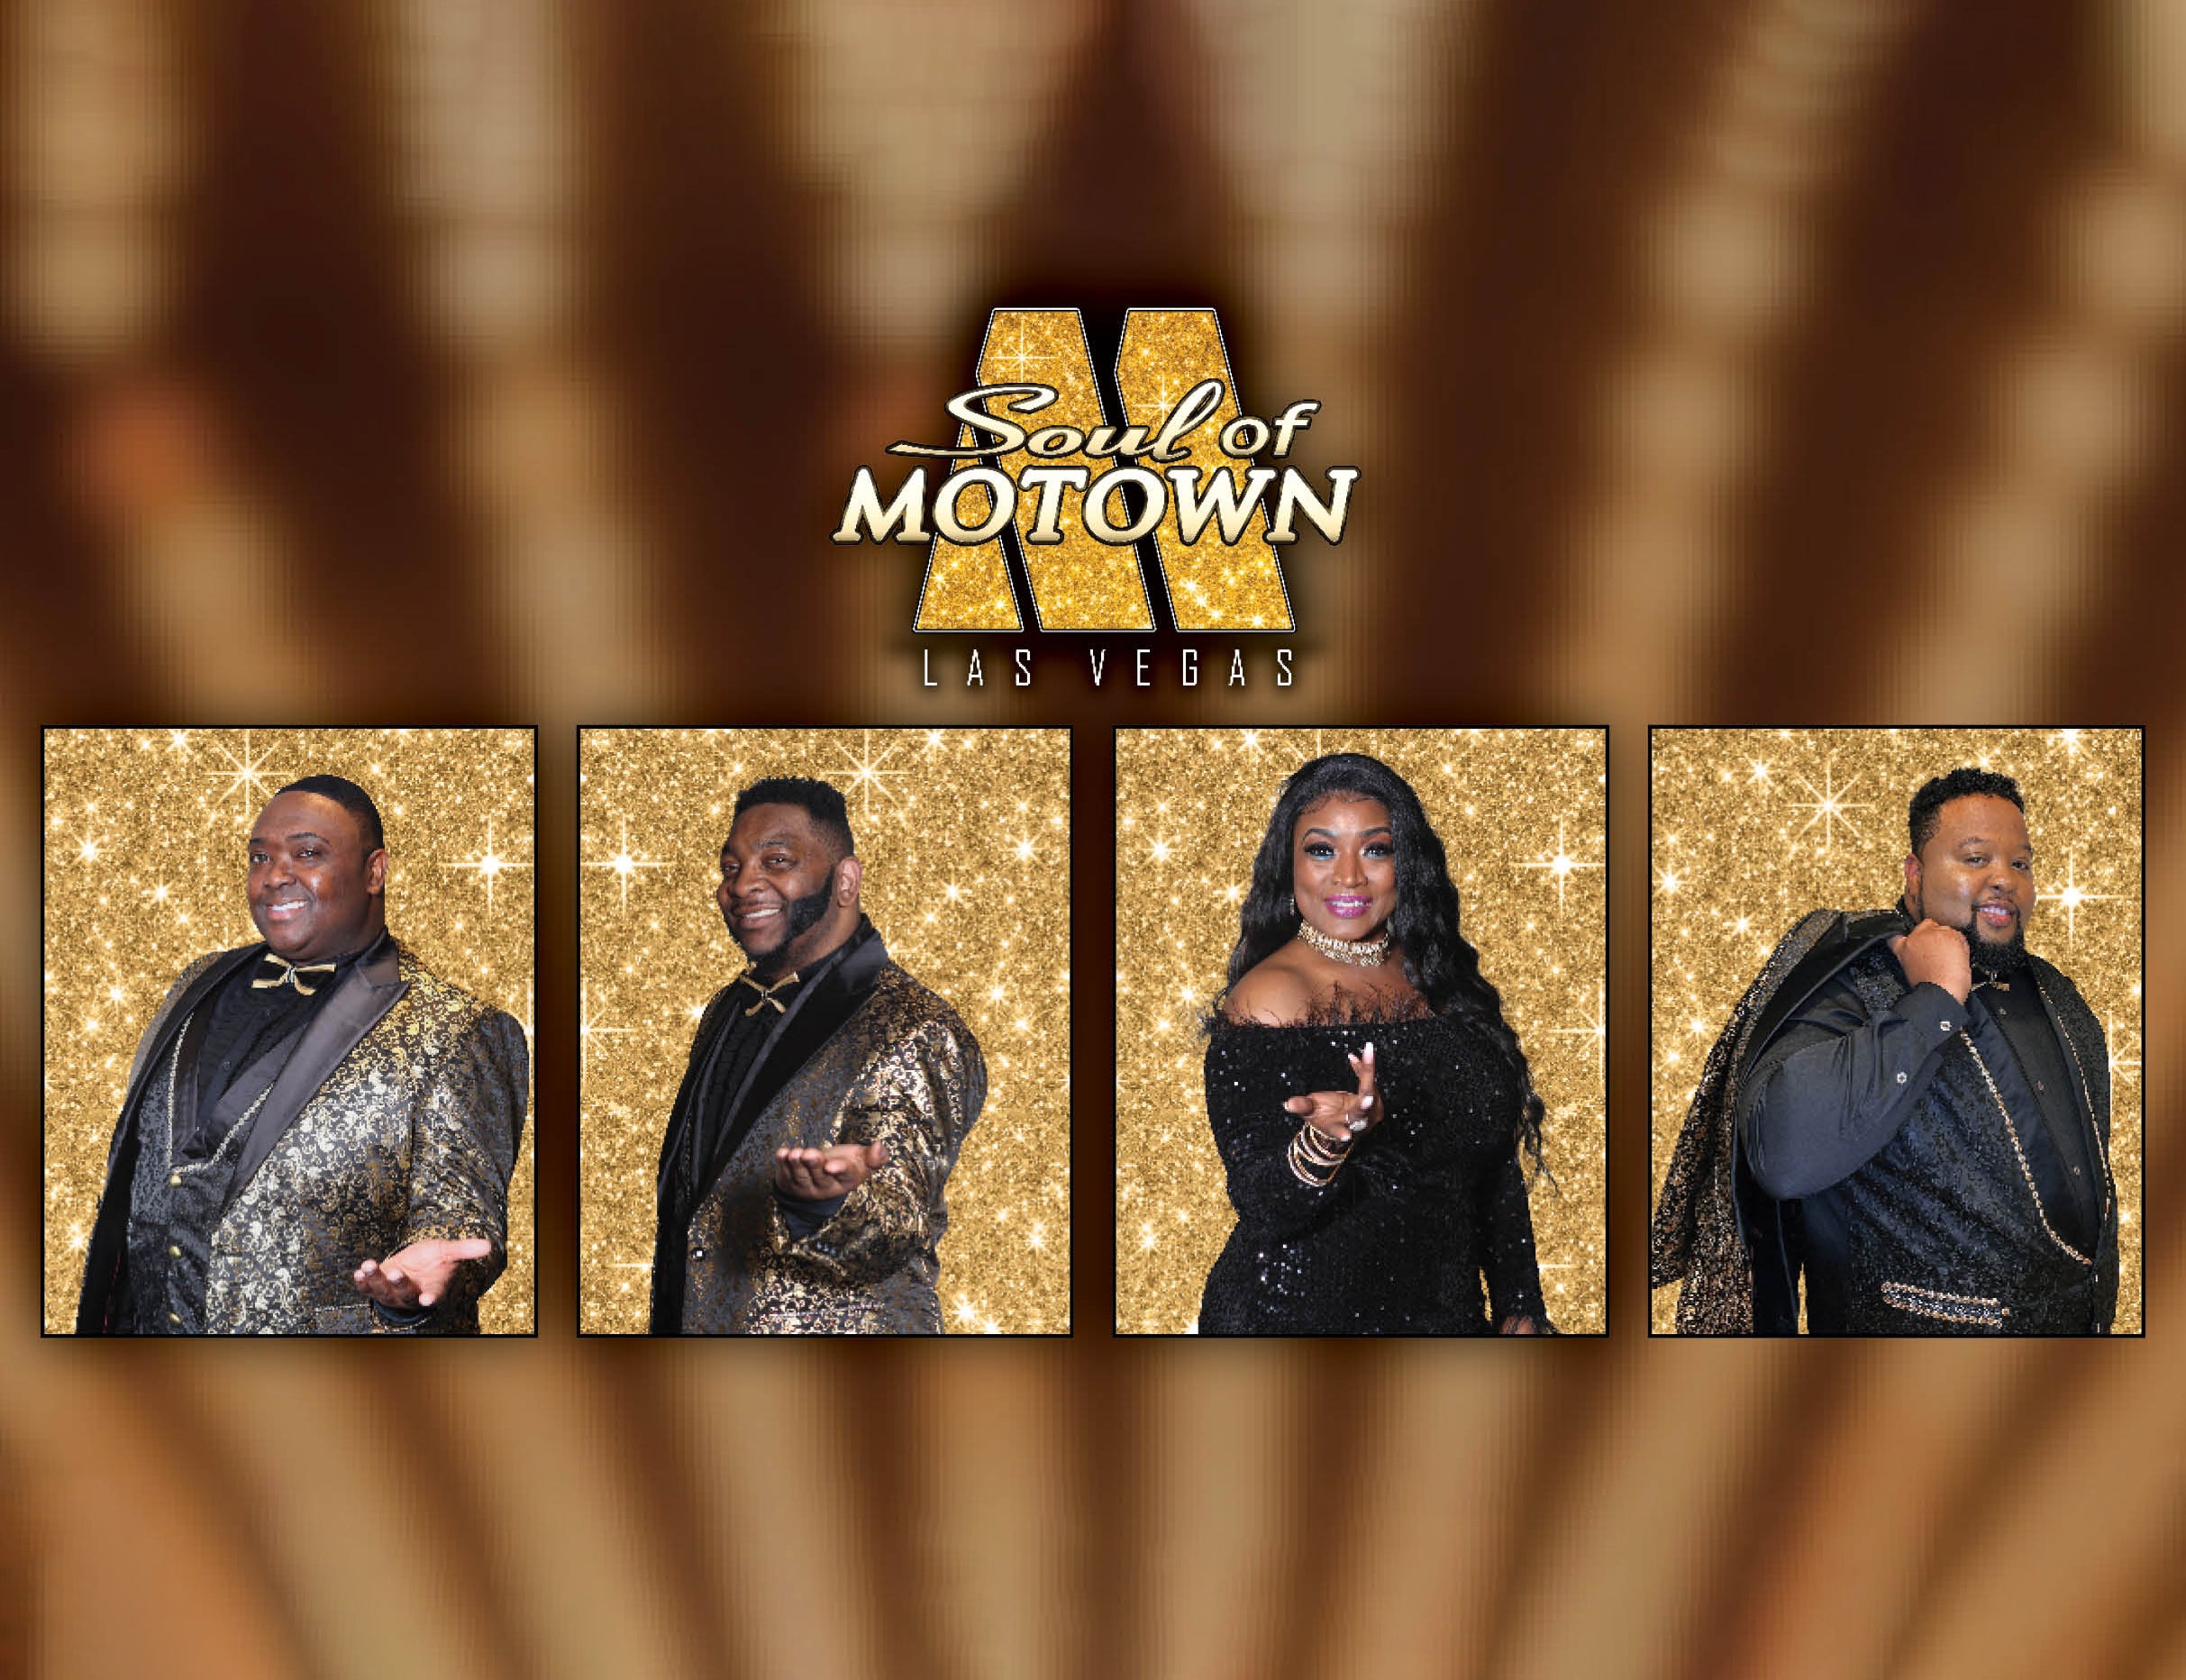 Soul of Motown at Westgate Las Vegas Resort & Casino – Las Vegas, NV